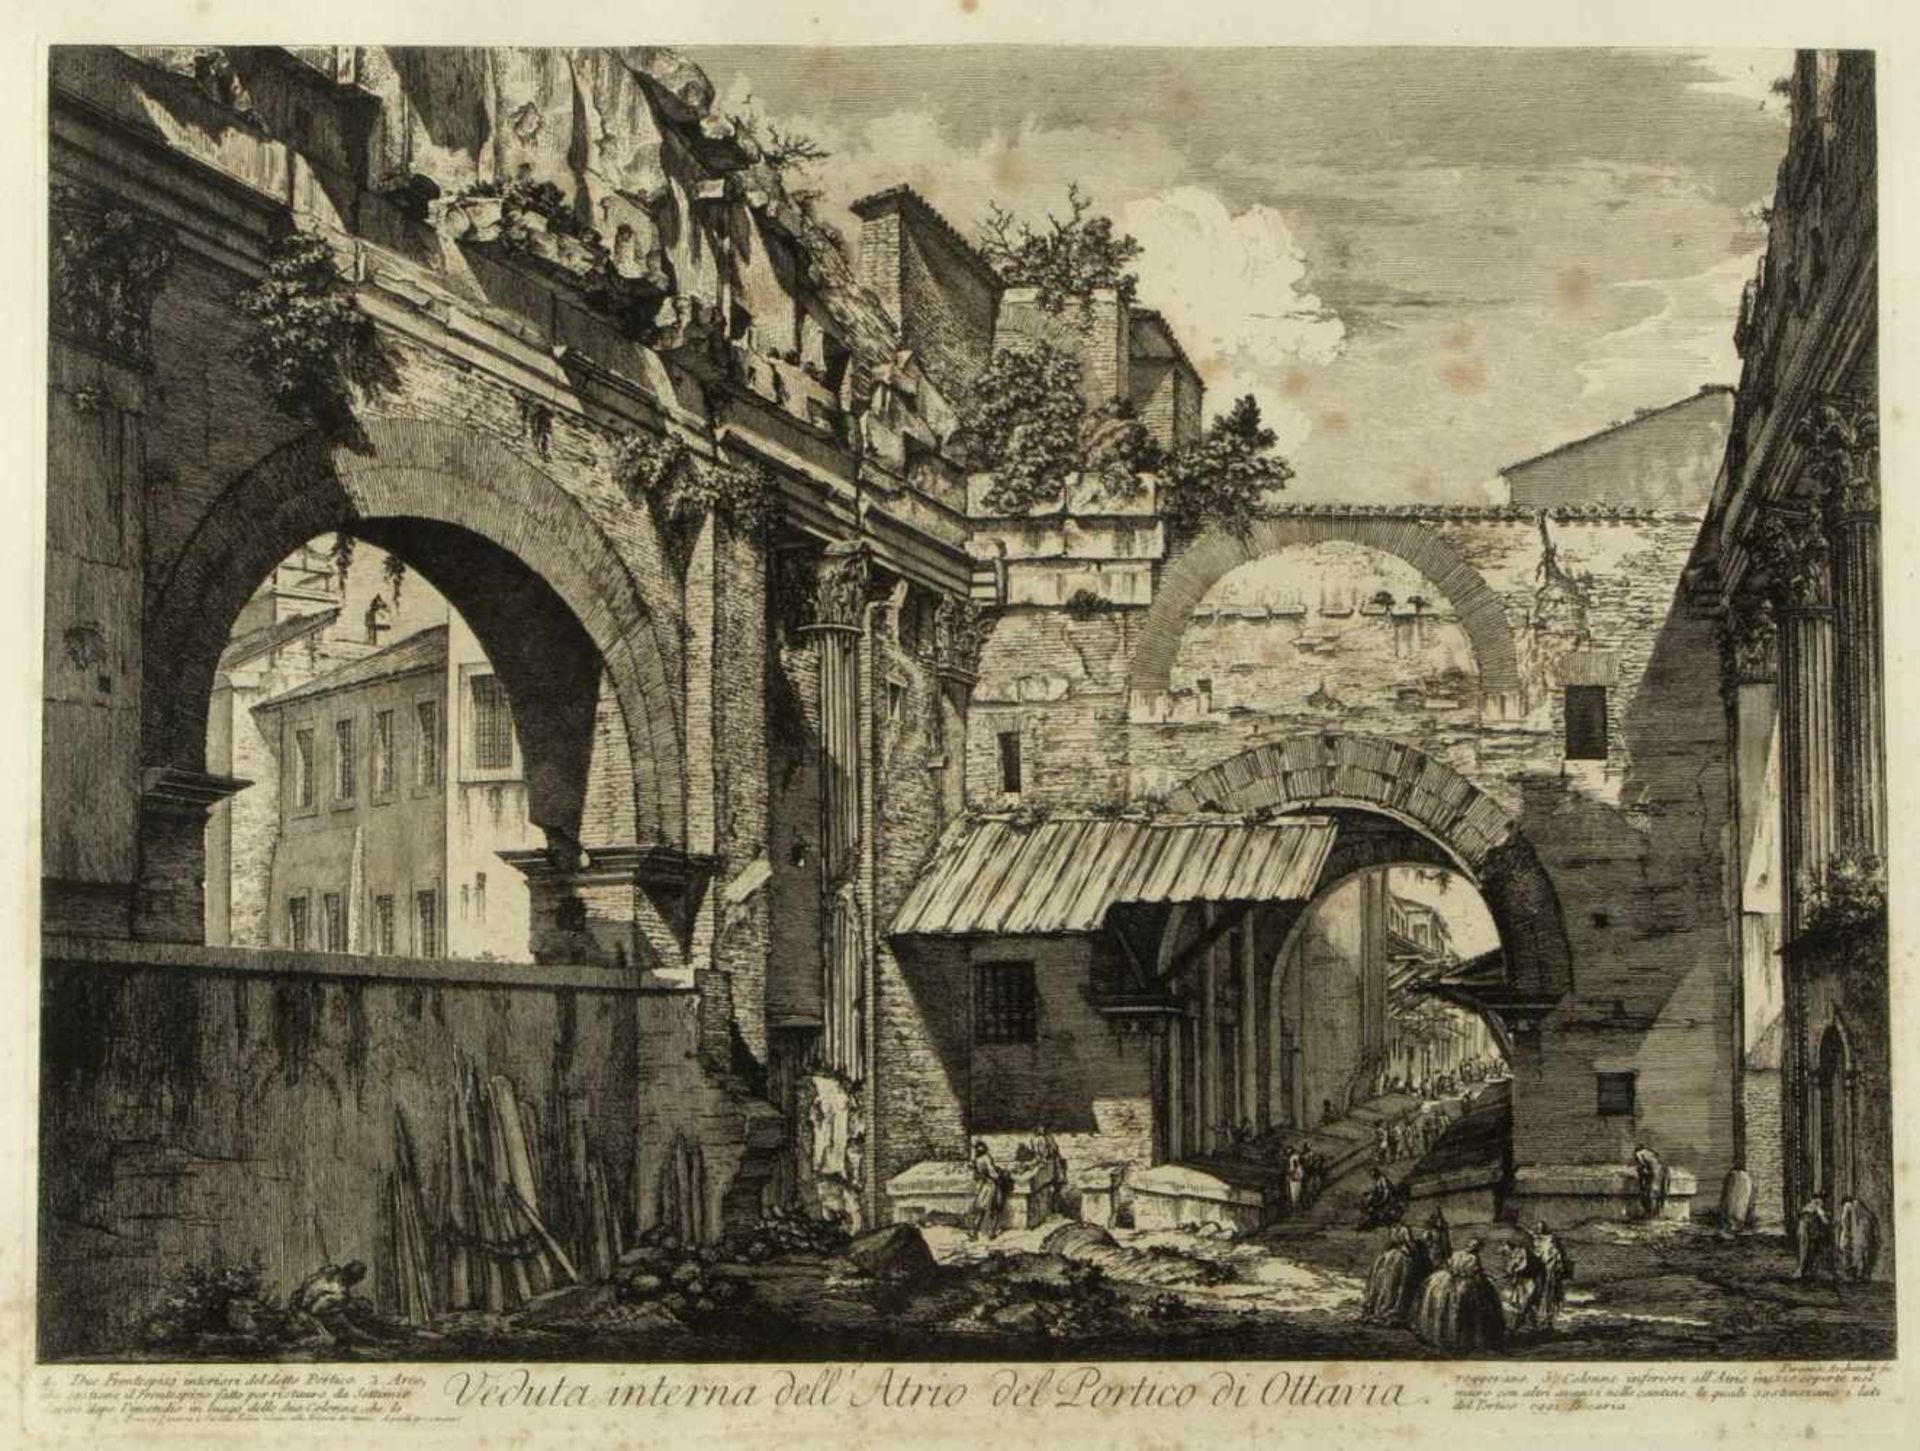 Piranesi, Giovanni-Battista. 1720 - Rom - 1778Veduta interna dell' Atrio del Portico di Ottavia.